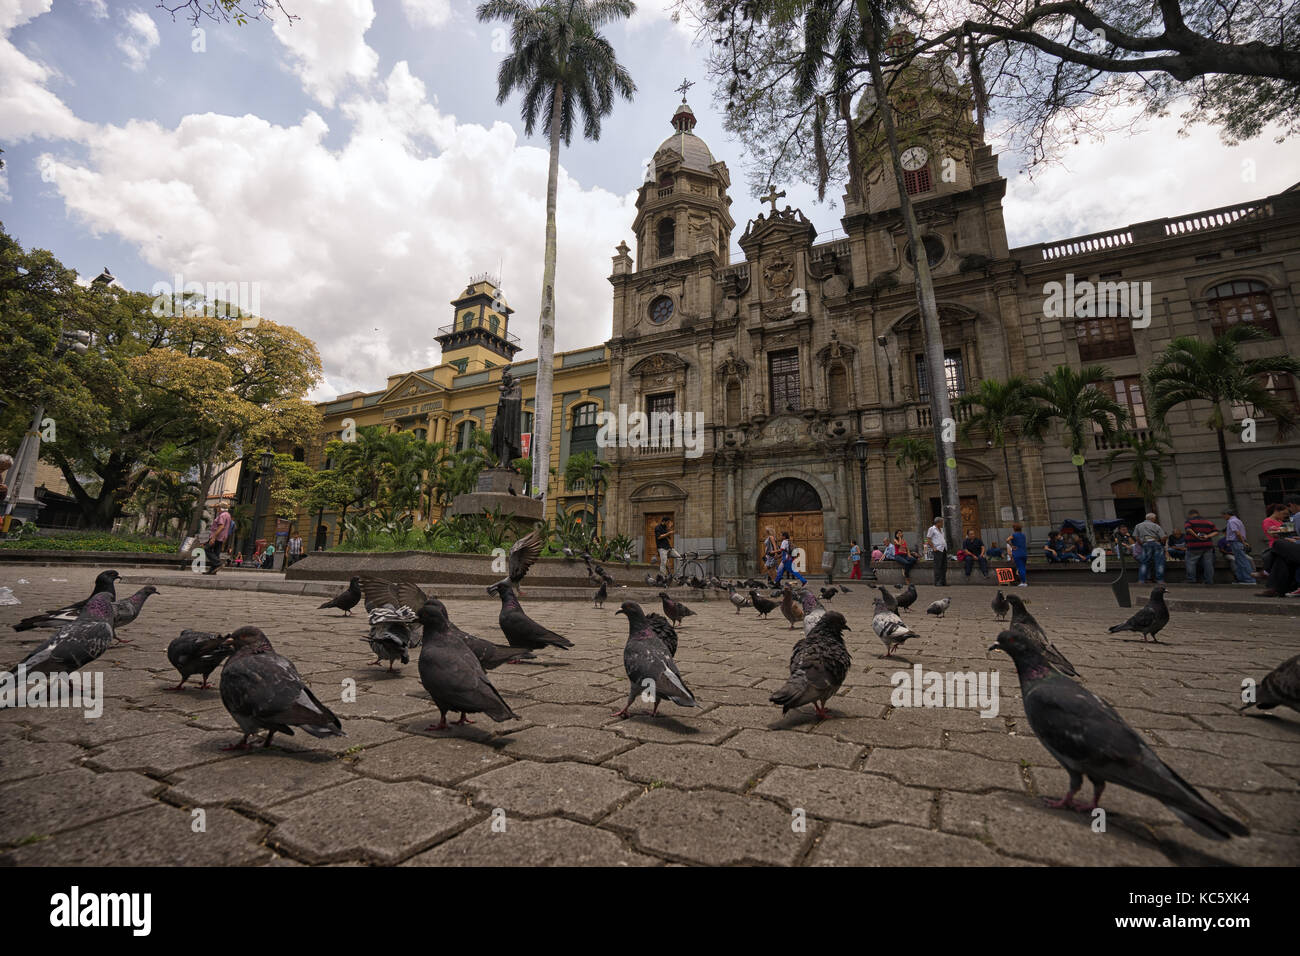 29 septembre 2017 Medellin, Colombie : pigeons à San Ignacio Plaza dans le cndelaria la superficie de la ville Banque D'Images